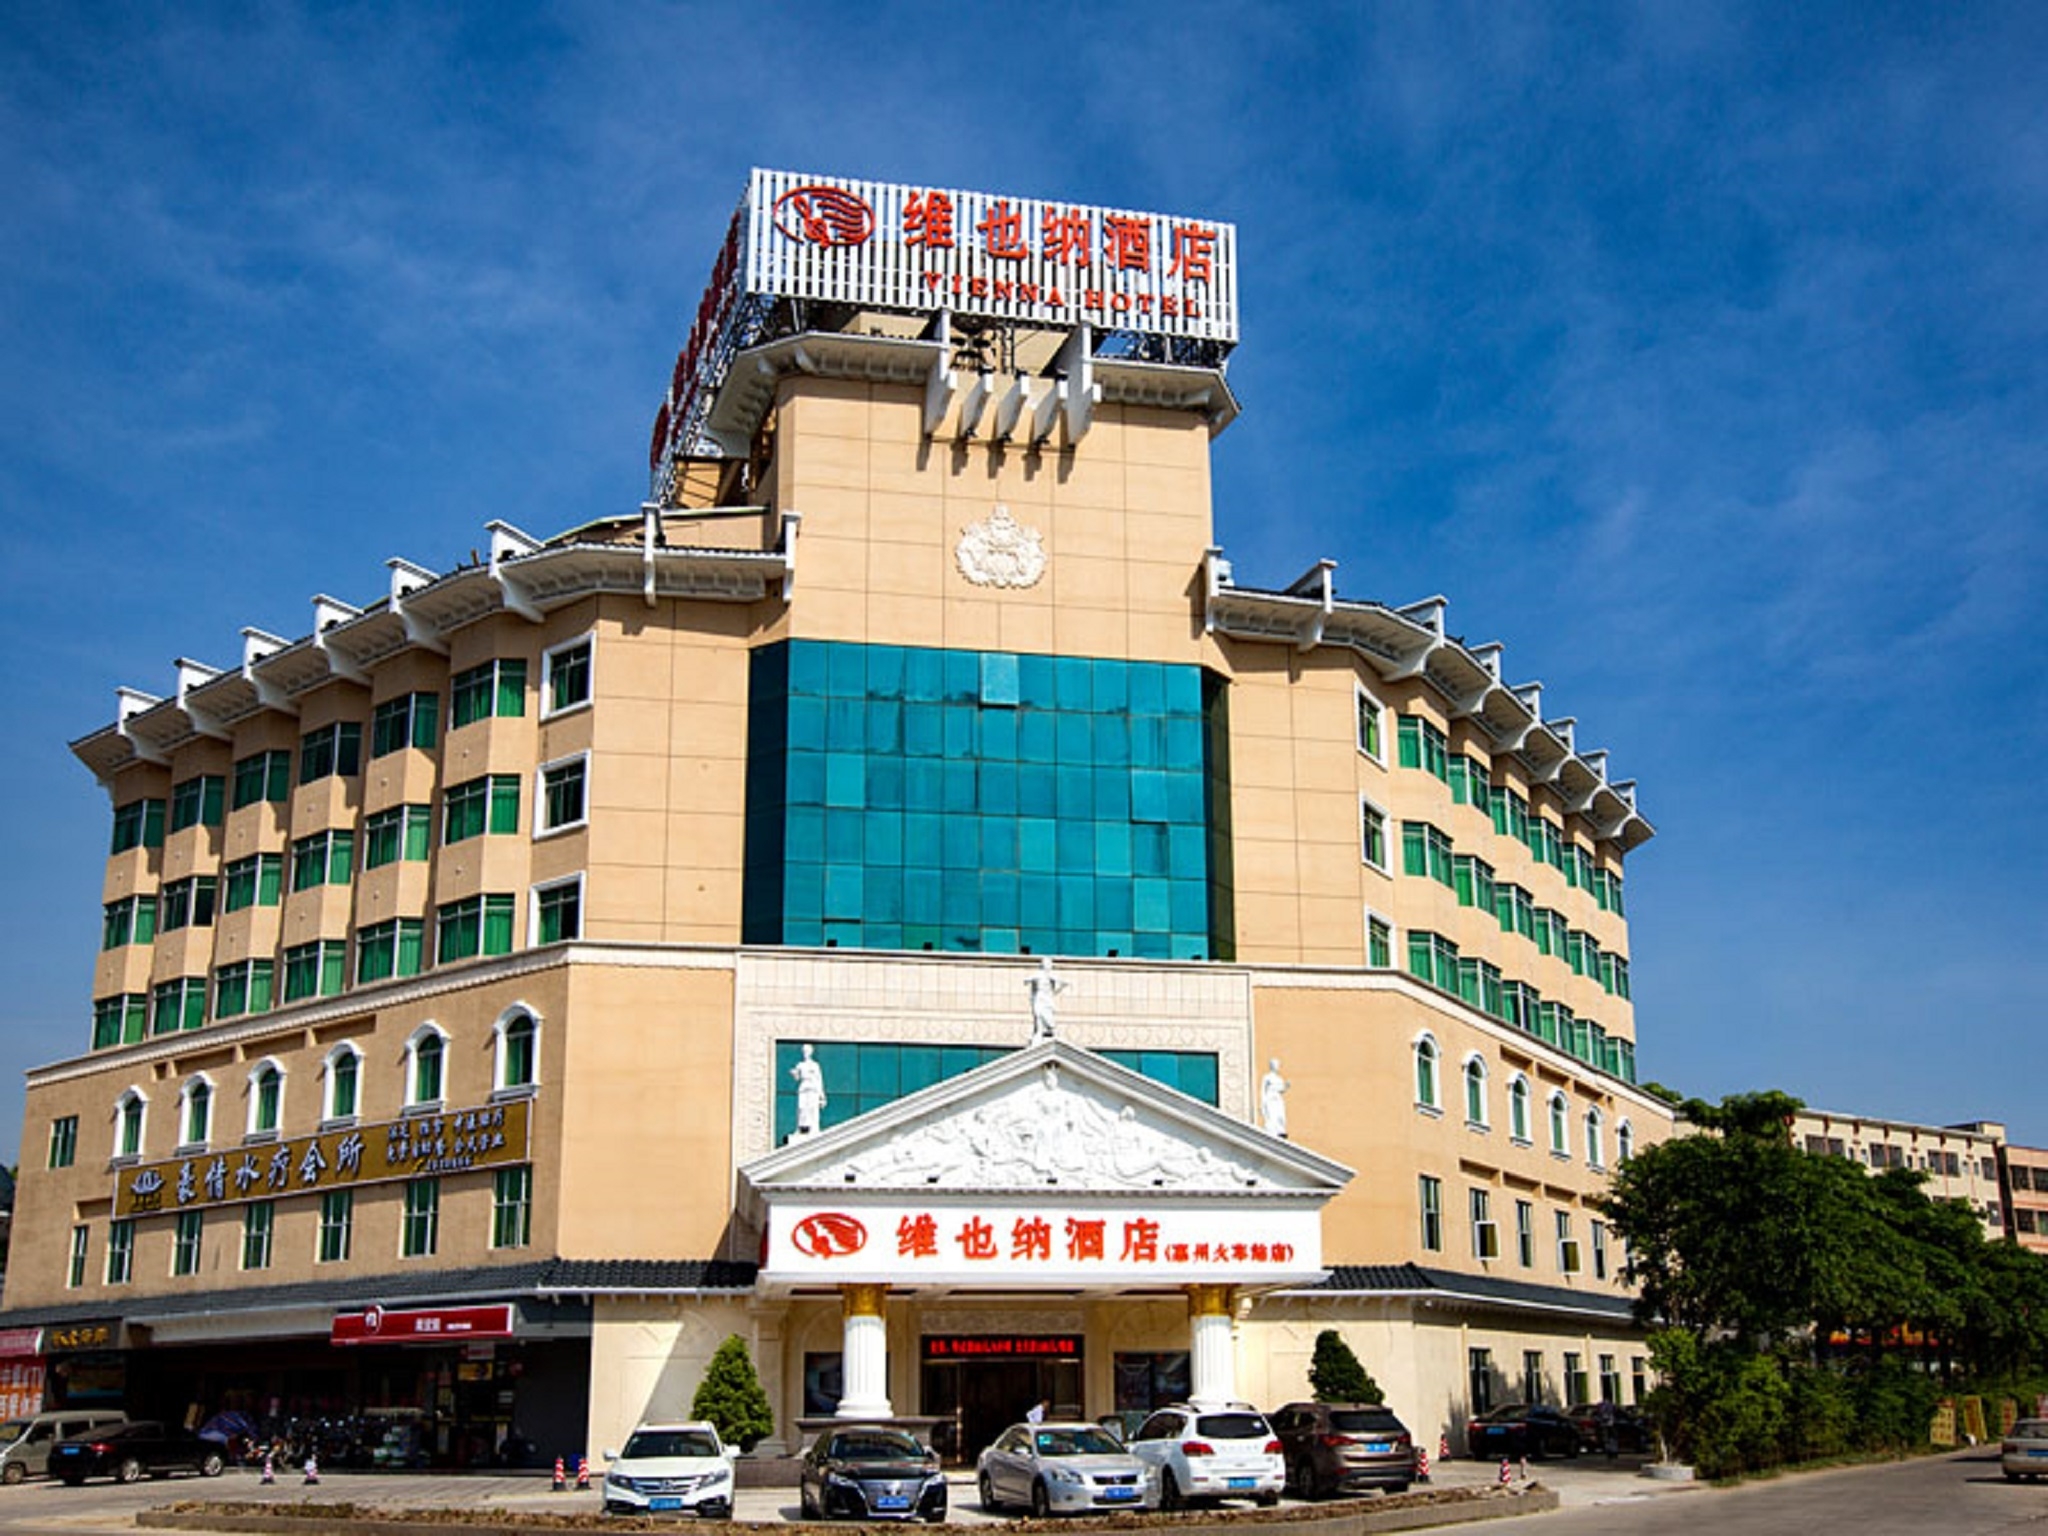 Guangdong) Huizhou Vienna Hotel (Jiangbei railway station Huizhou Railway Station